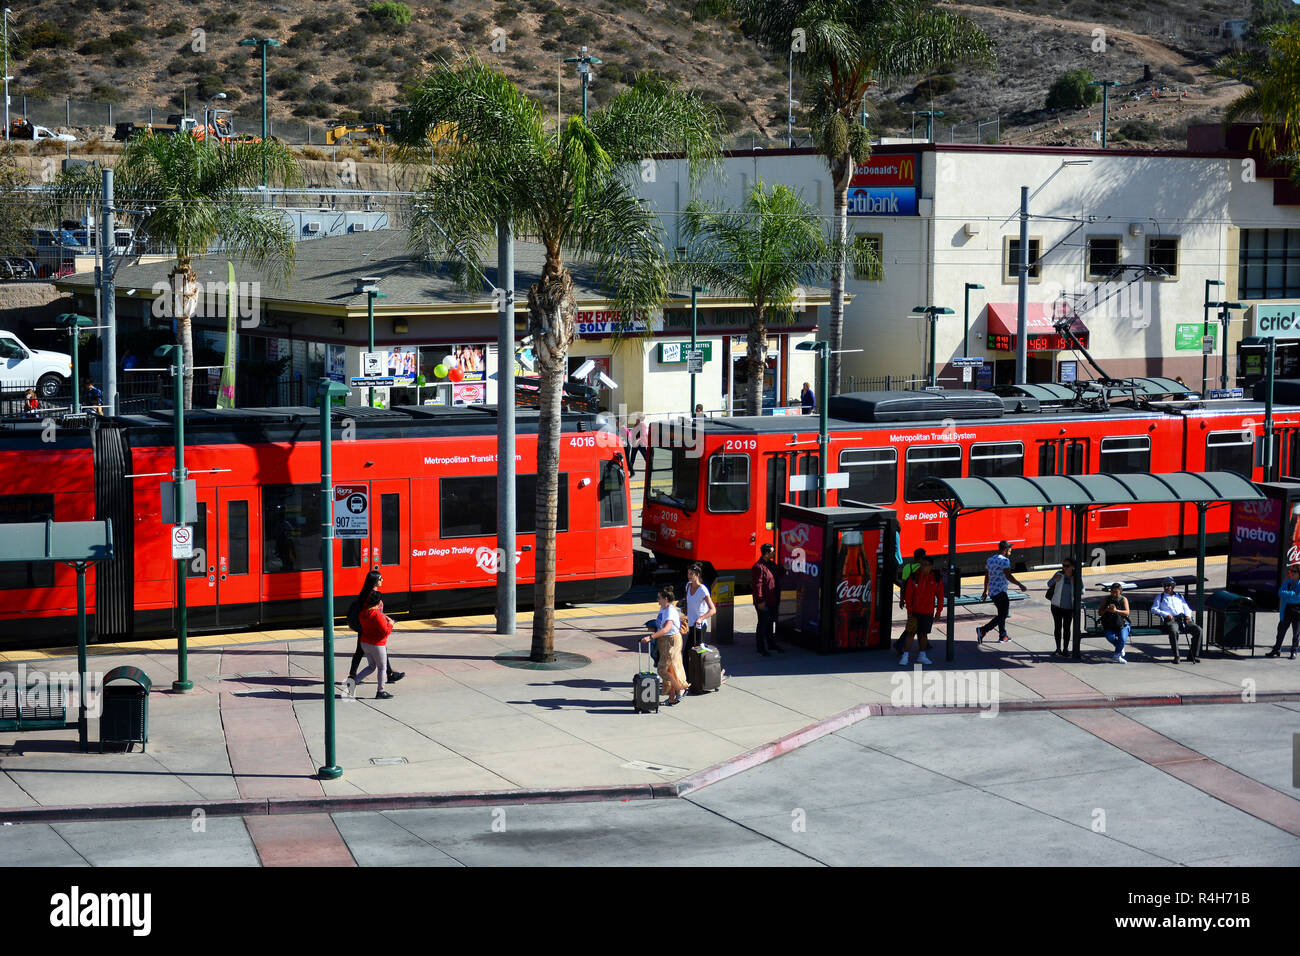 SAN YSIDRO, CALIFORNIA - 26 novembre 2018: San Diego Trolley (SDTI) è un sistema di ferrovia leggera di servire la metropolitana di San Diego Area. Foto Stock